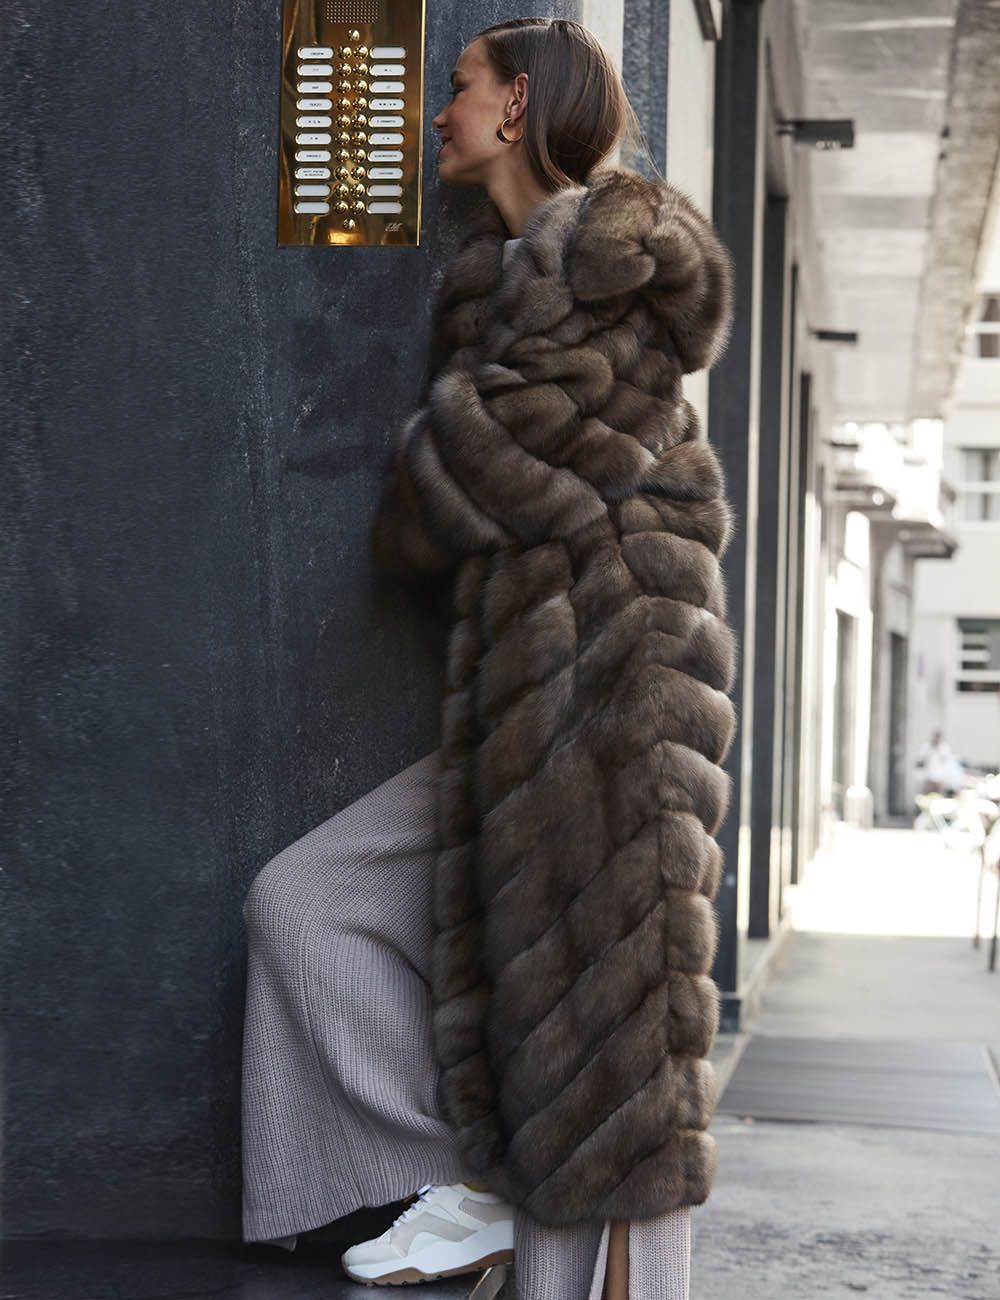 Какие виды меха предлагает Dubai Furs?